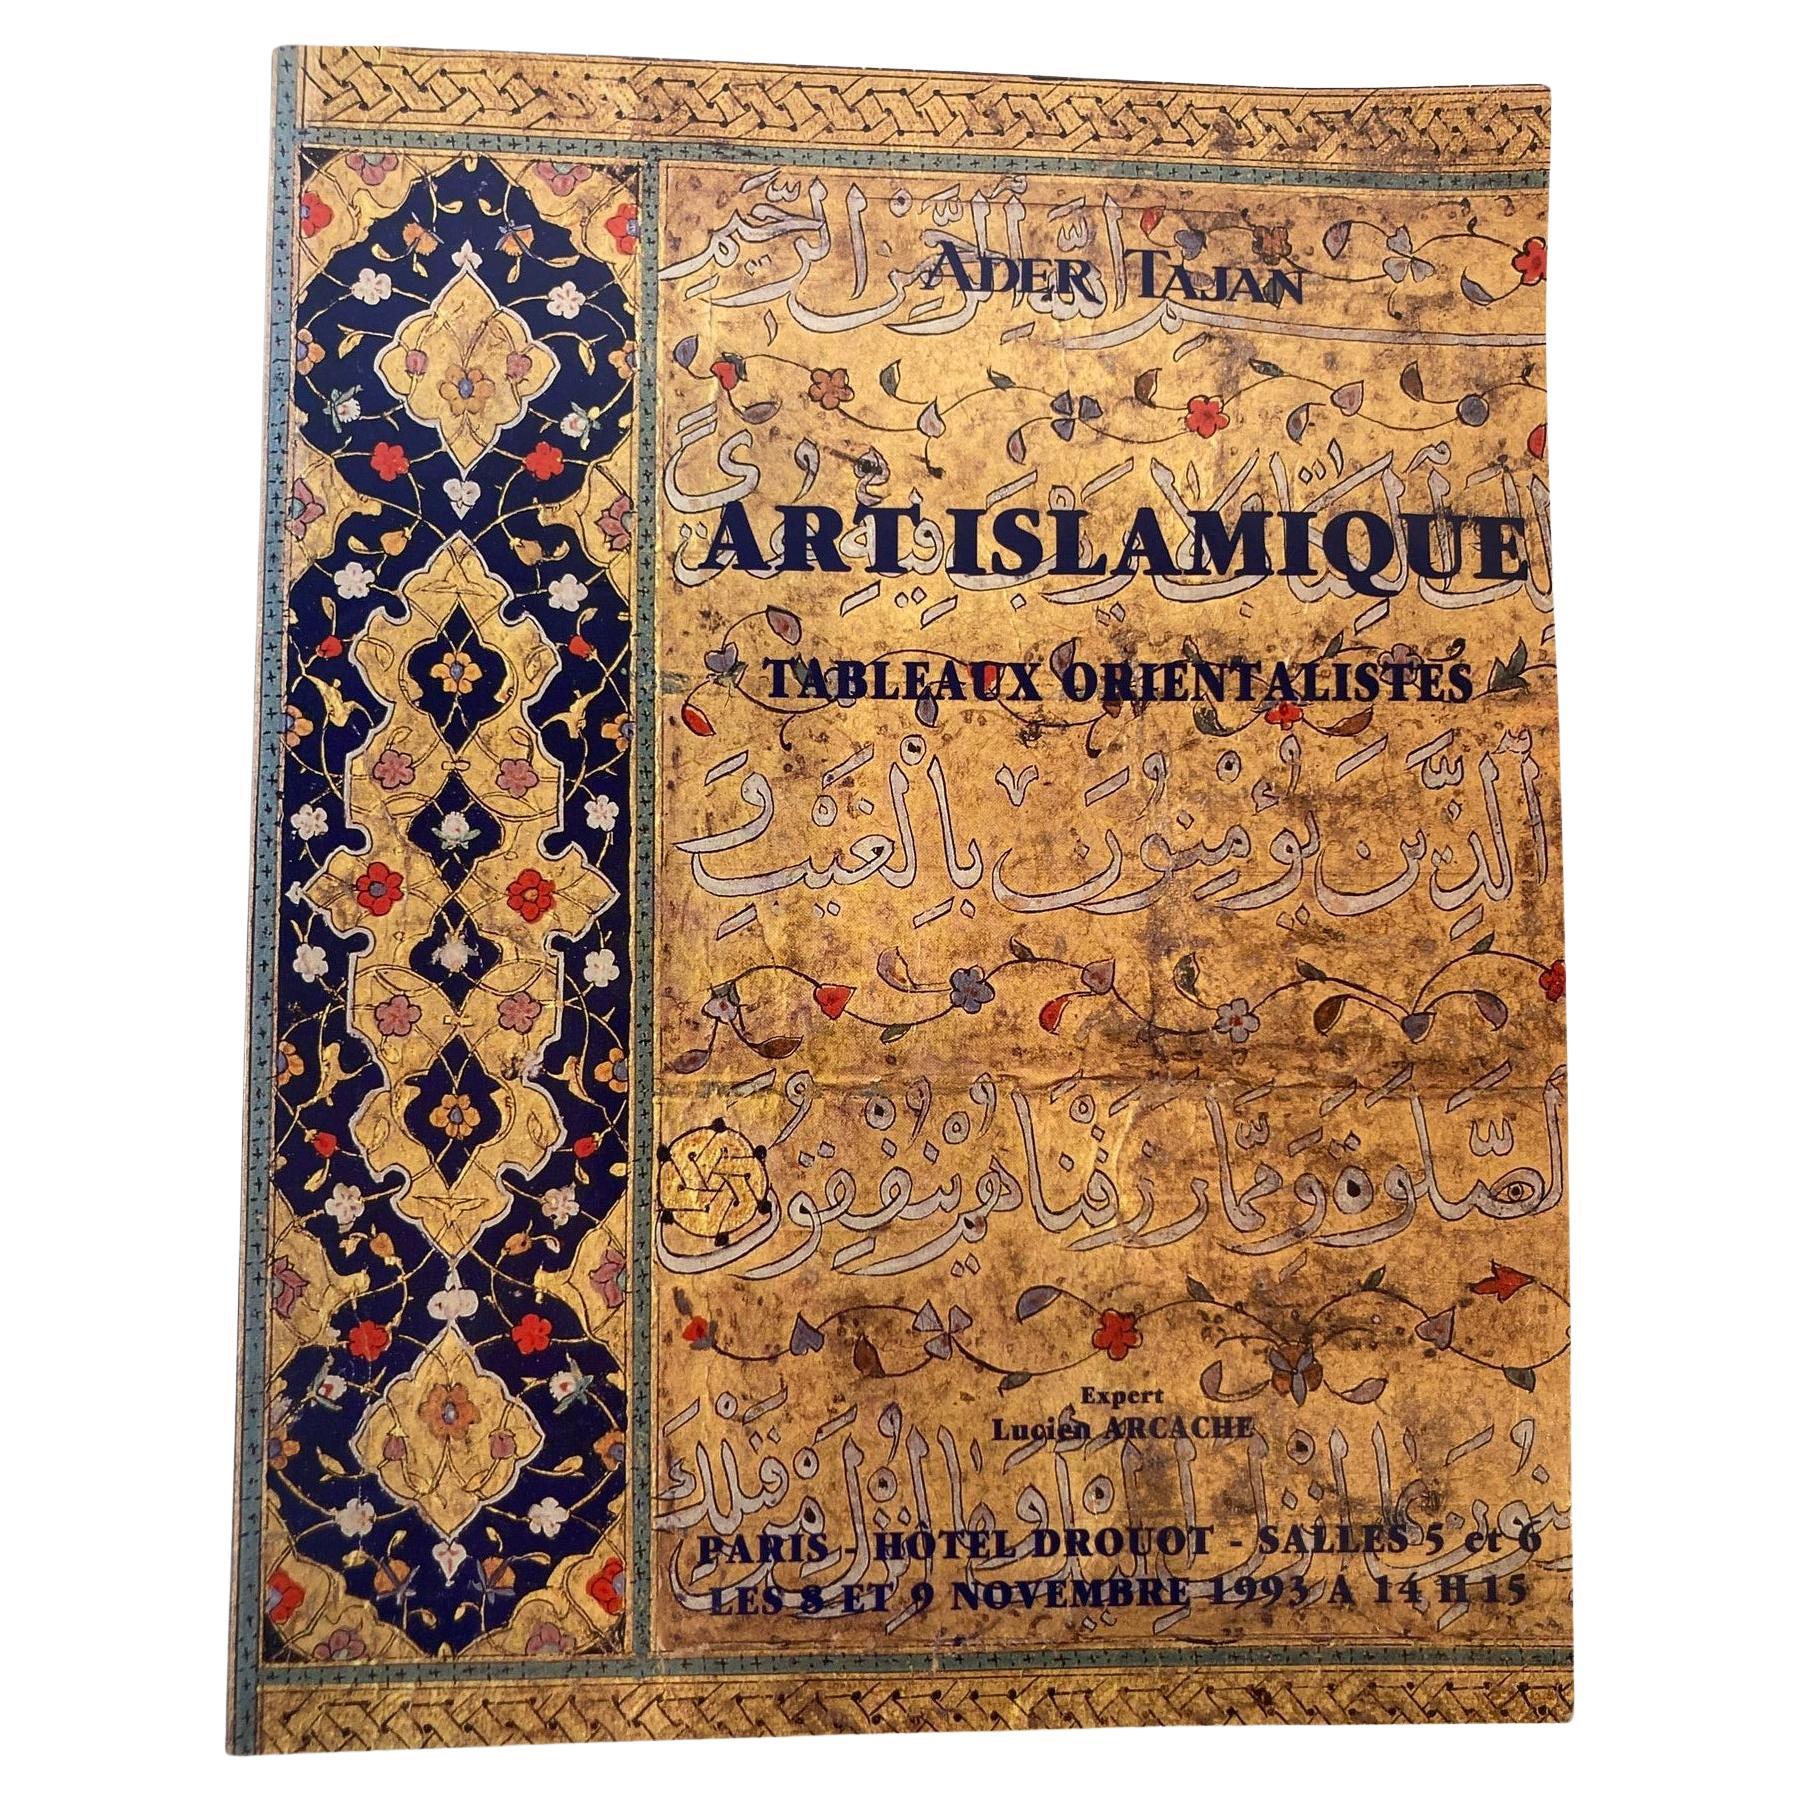 Art islamique, peintures orientalistes Catalogue de vente aux enchères Tajan, 1993